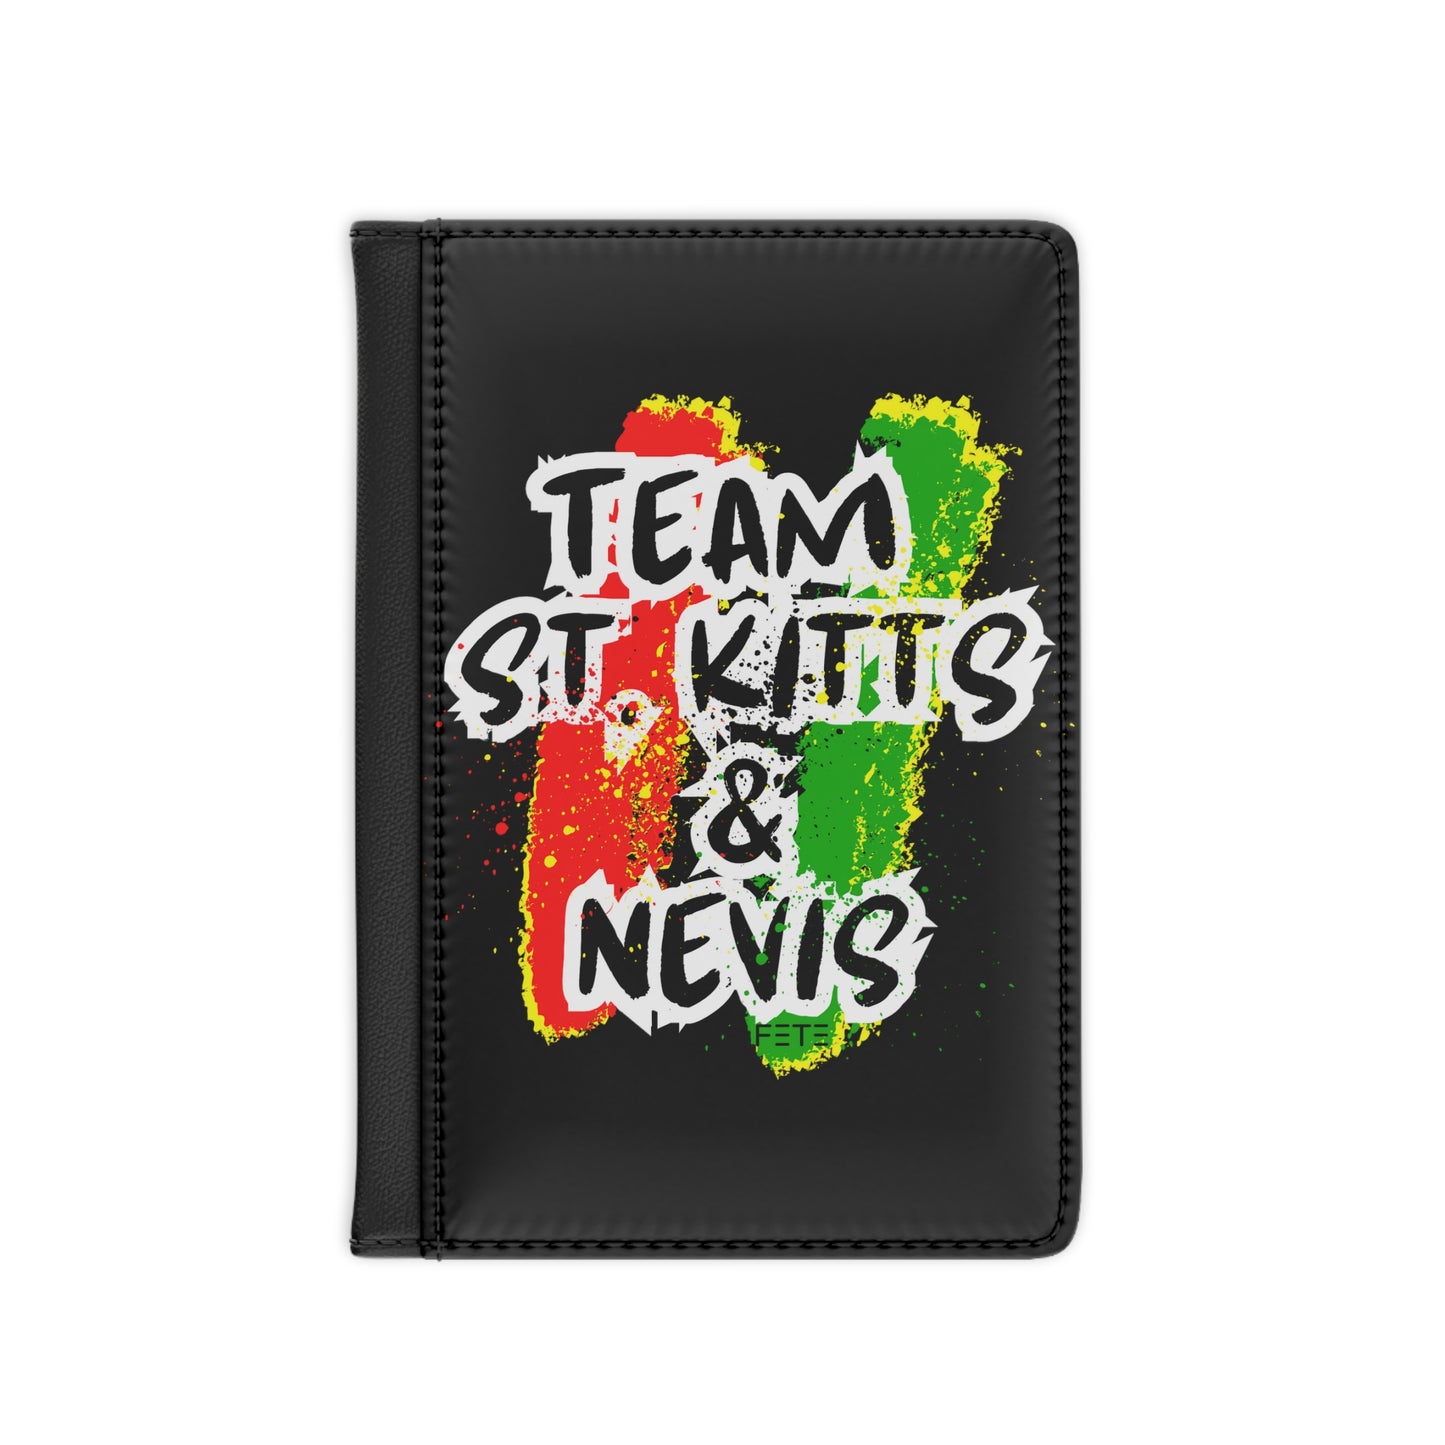 Team St.Kitts & Nevis Passport Cover